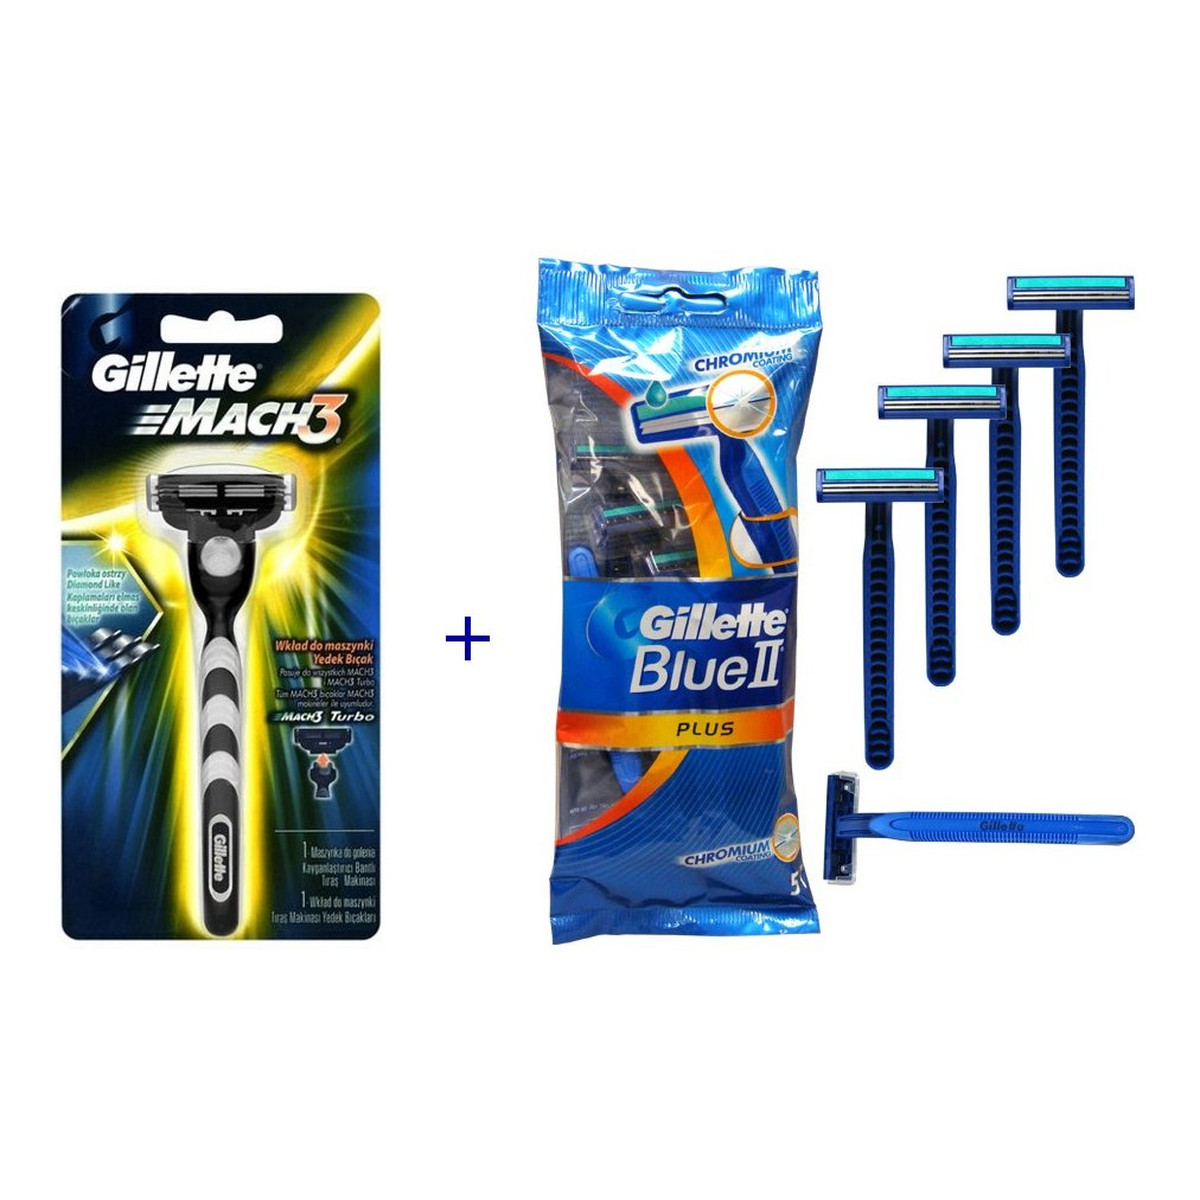 Gillette Gillette Mach3 Maszynka+Gillette Blue Plus Maszynki Jednorazowe (5szt)